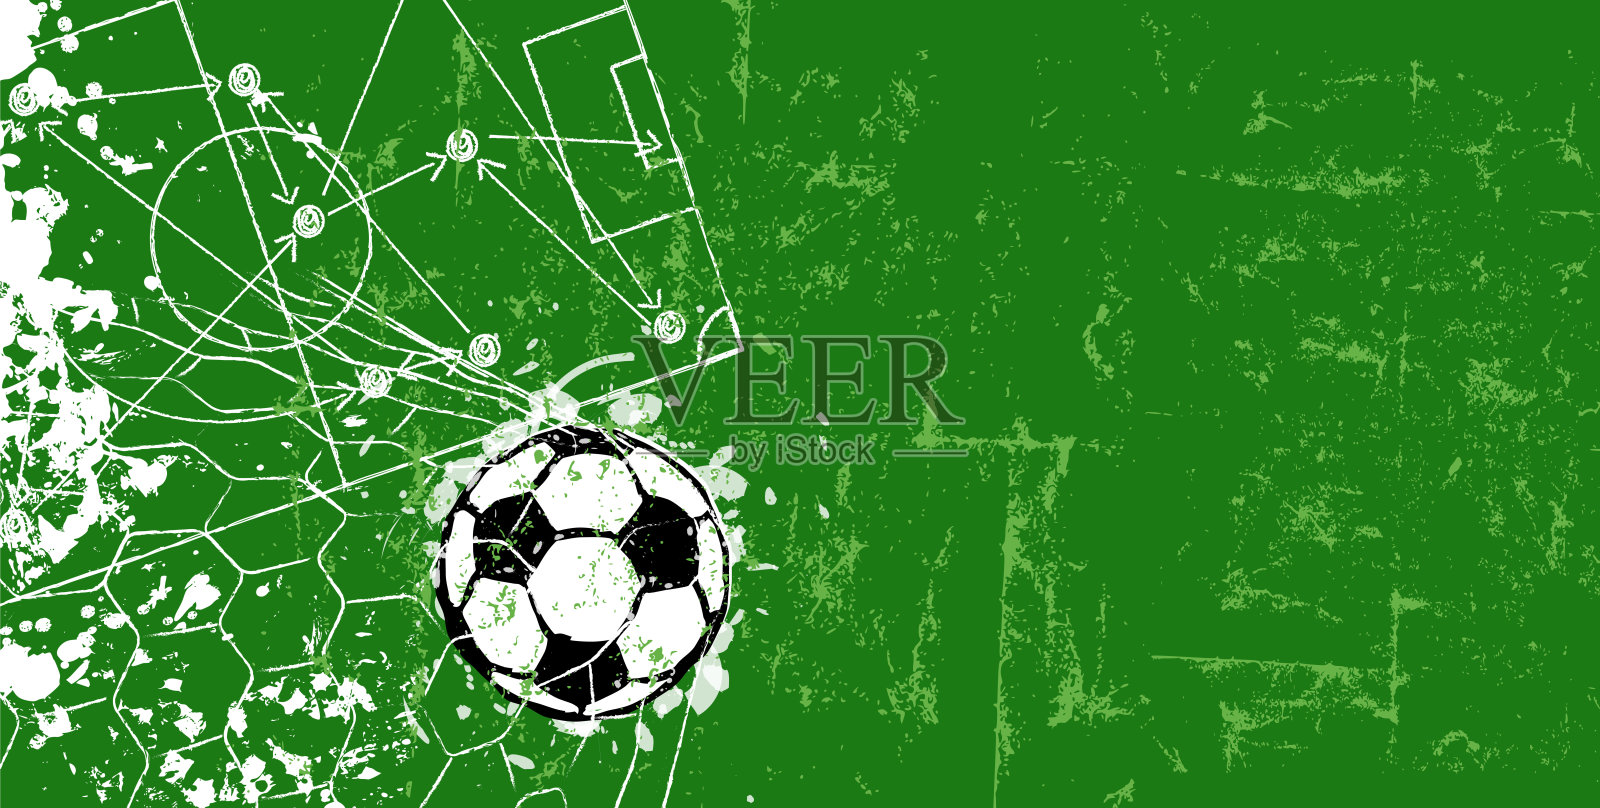 足球/足球设计模板或背景插画图片素材